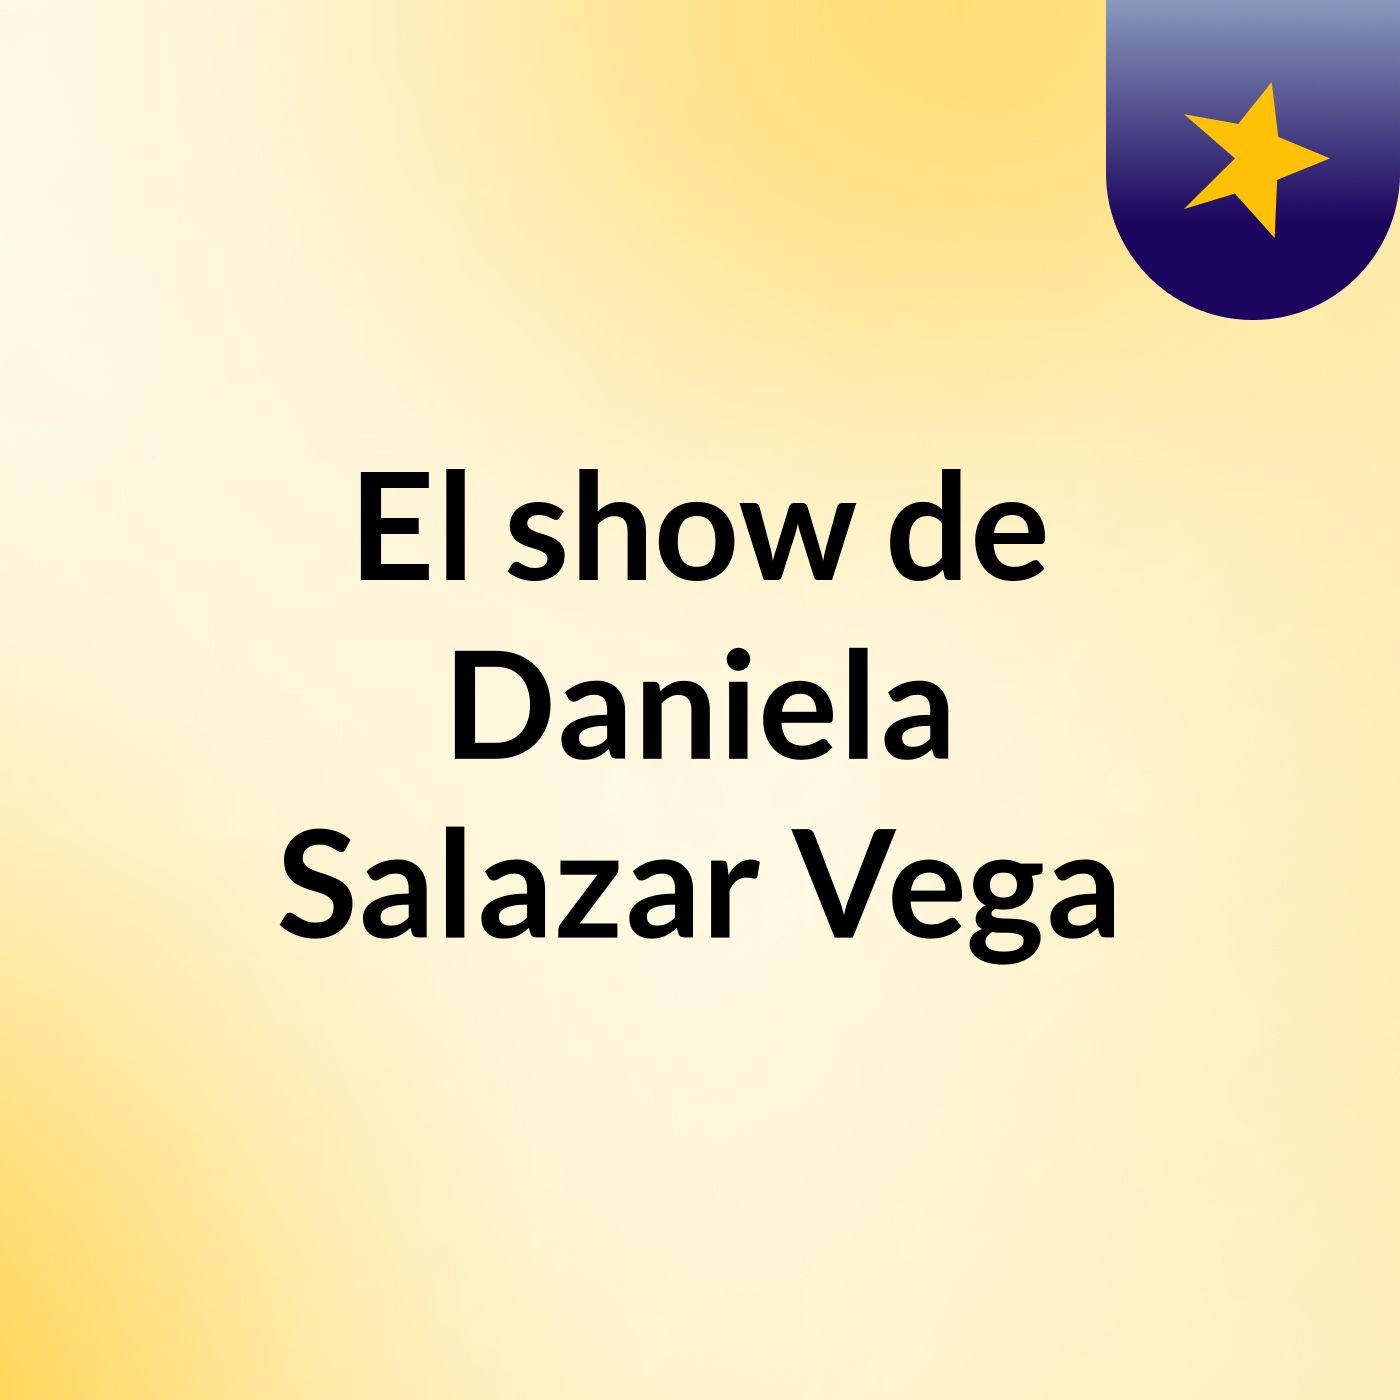 El show de Daniela Salazar Vega